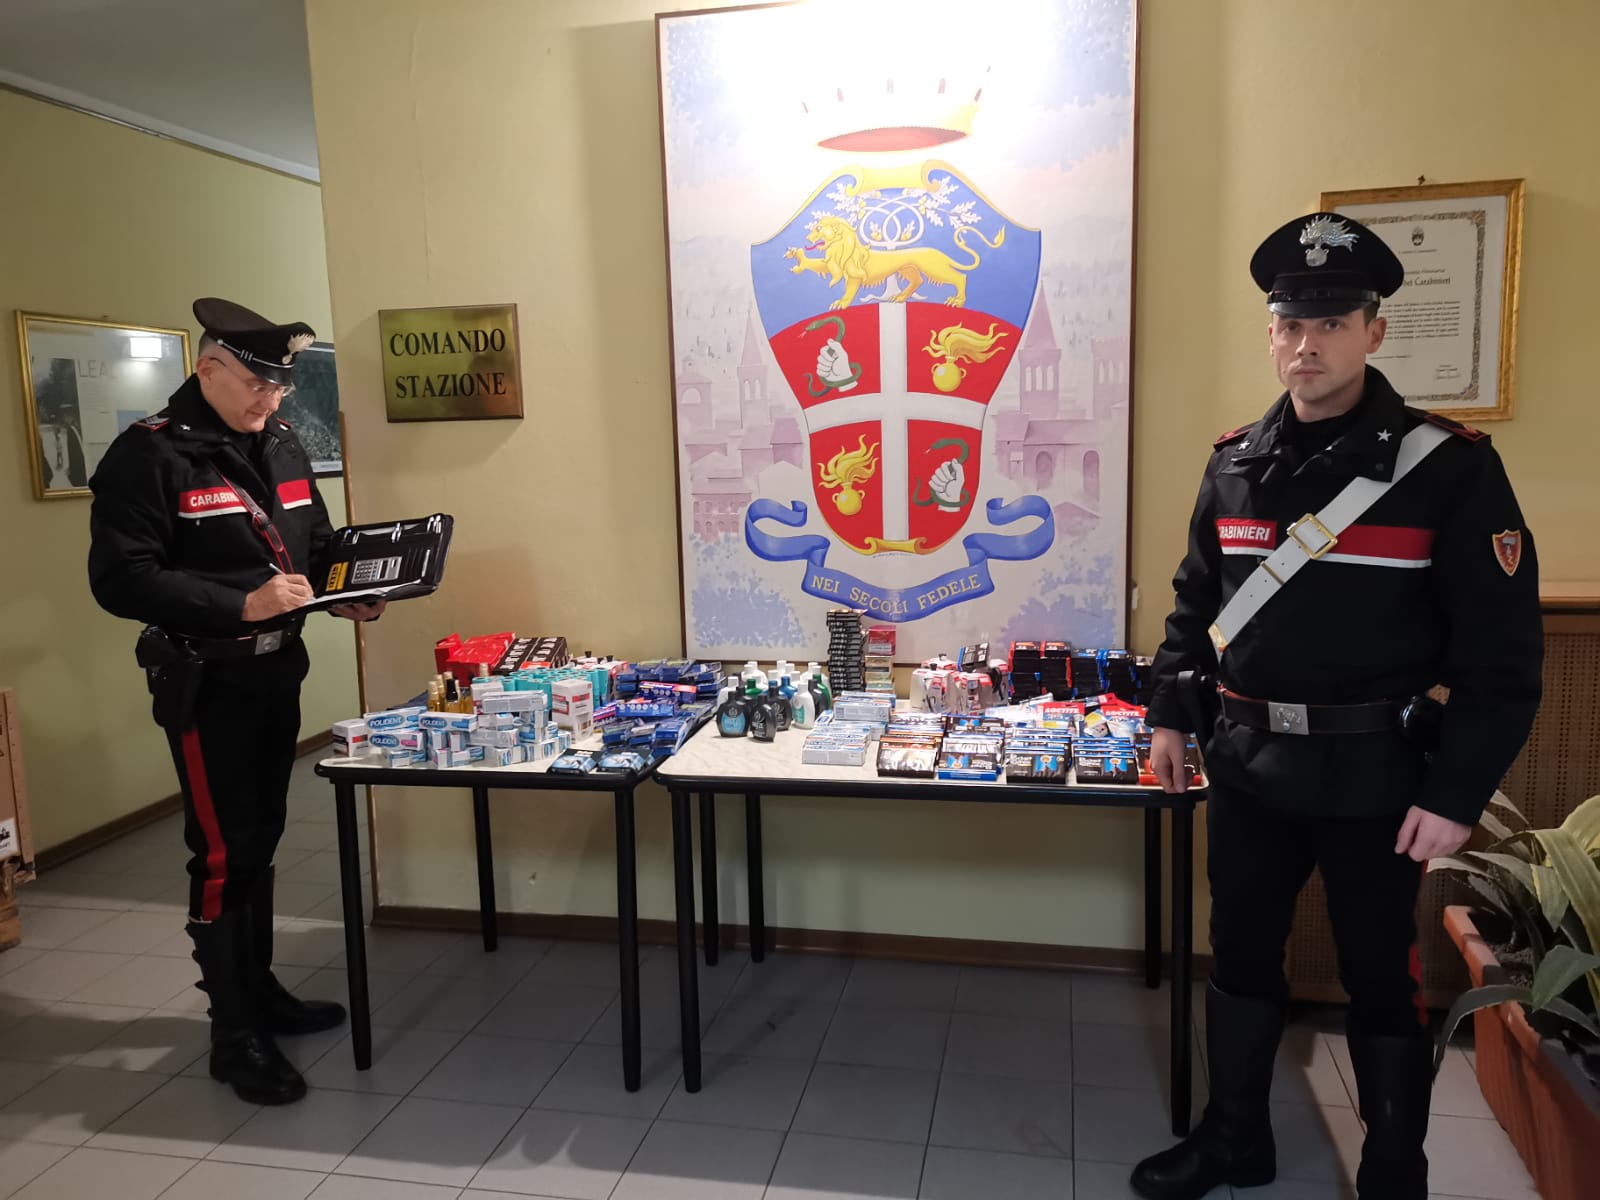 Svaligiano cinque supermercati in poche ore, coppia arrestata dai carabinieri